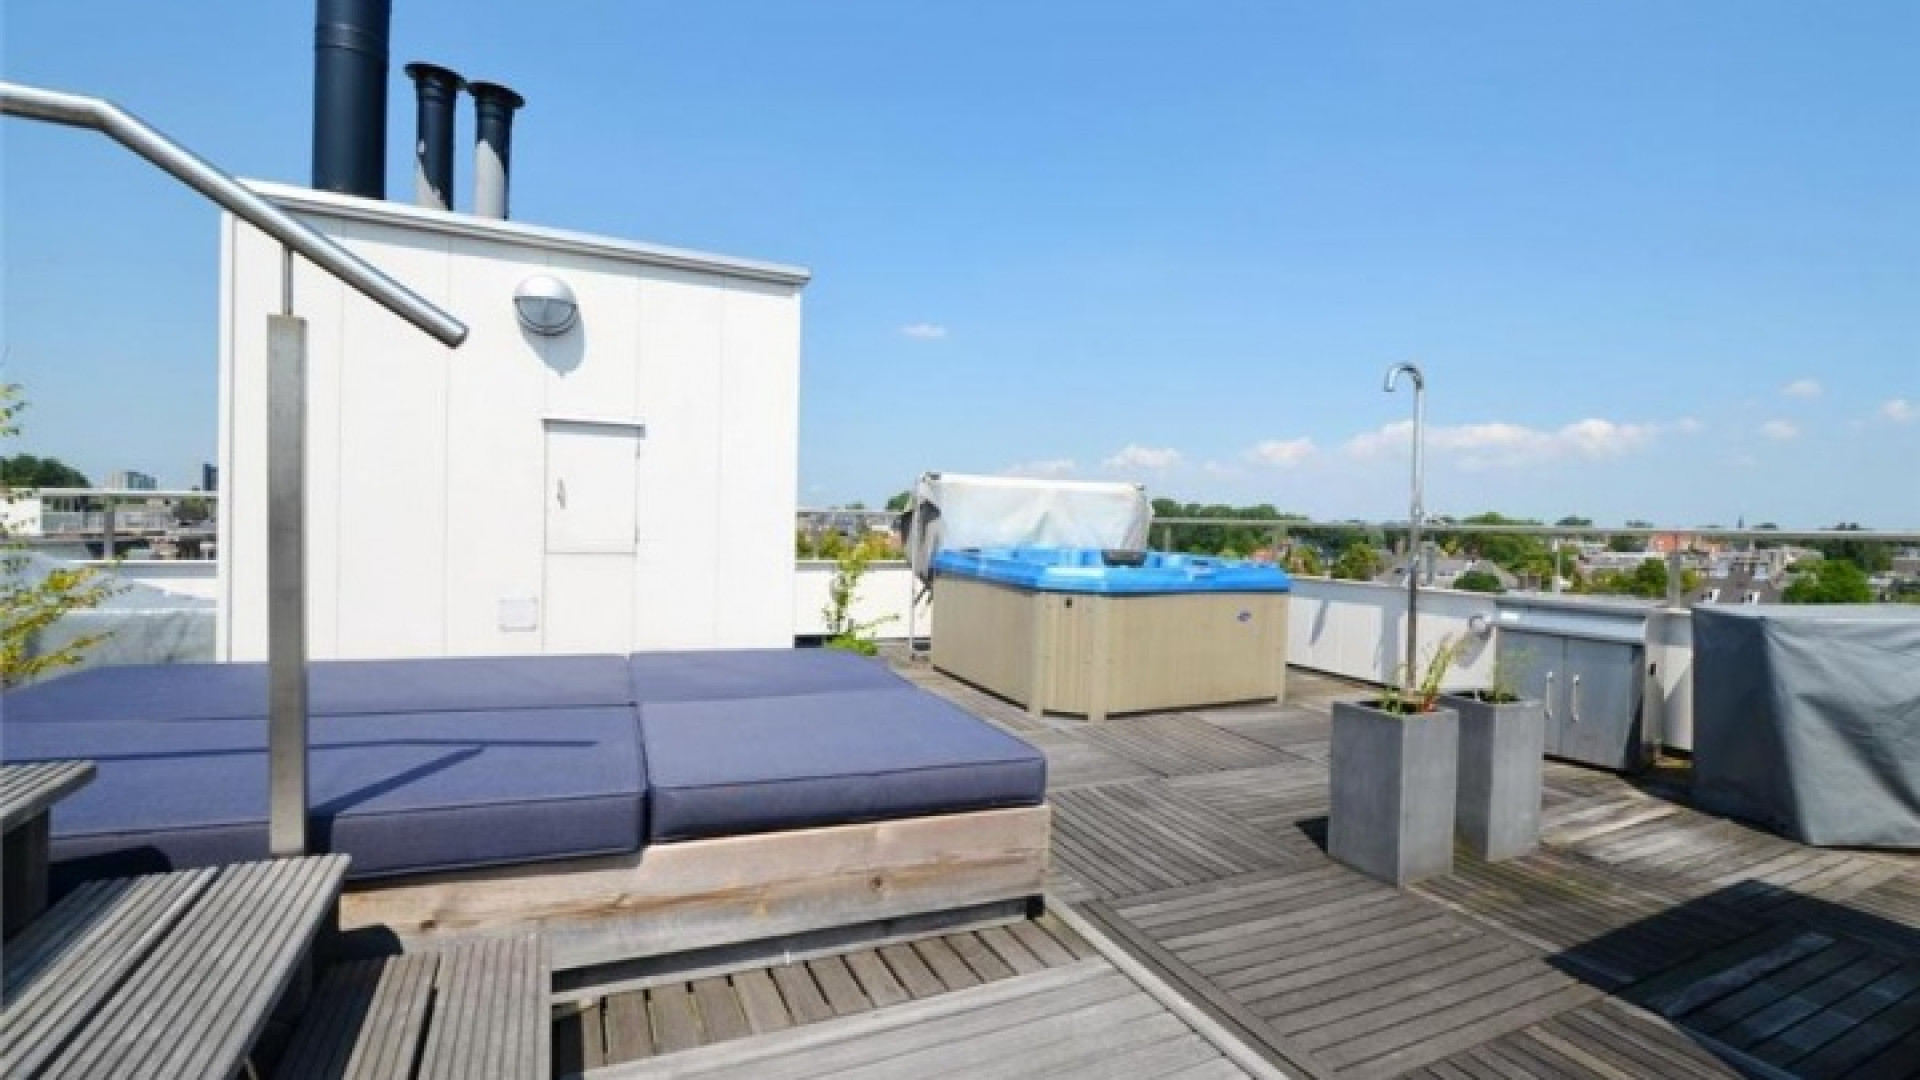 Frank Rijkaard zoekt huurder voor zijn luxe dubbele bovenhuis. Zie foto's 28